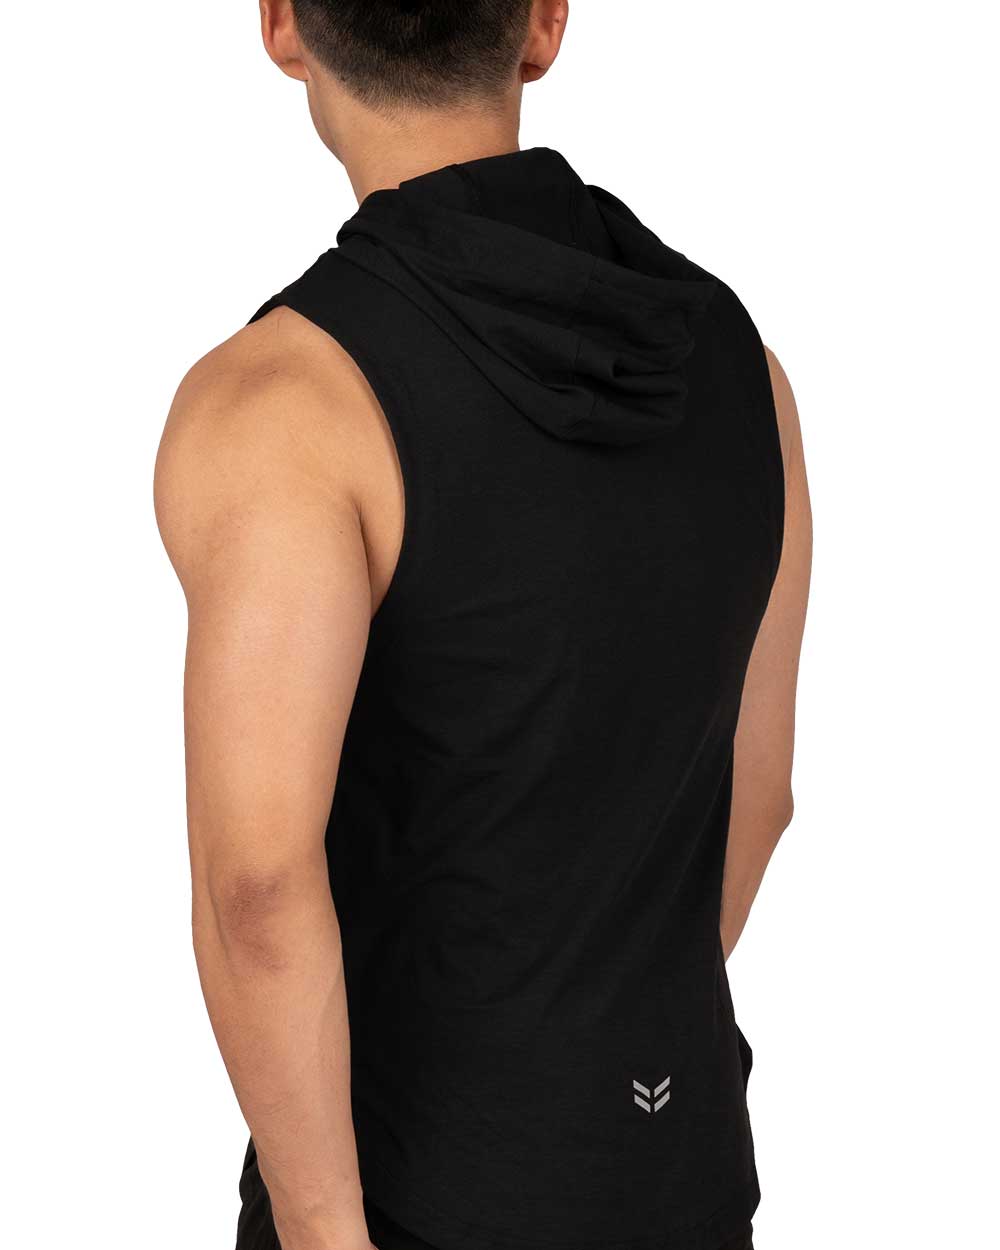 Hoody Muscle Vest - Black [4607]